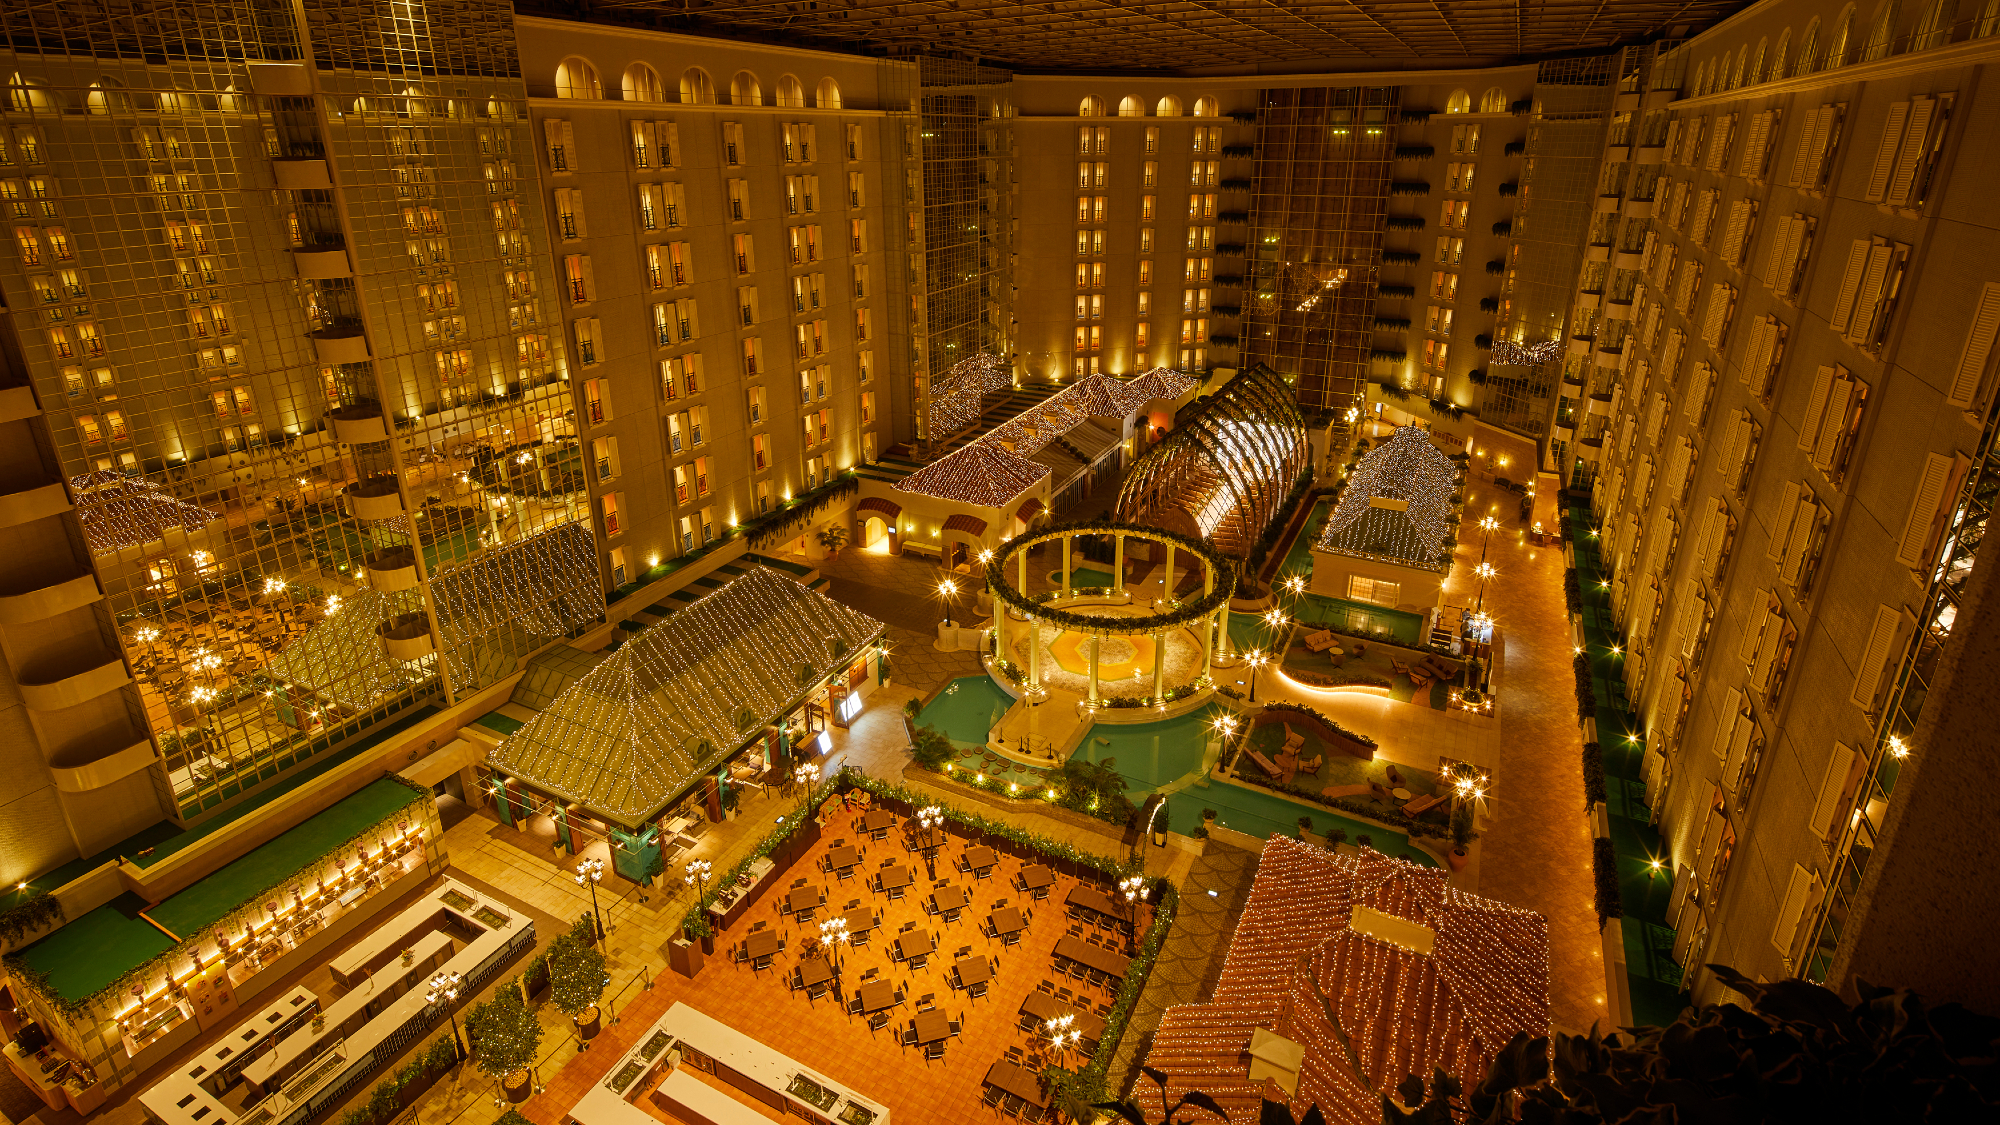 〇夜のホテル3階アトリウムロビー全景(イメージ)